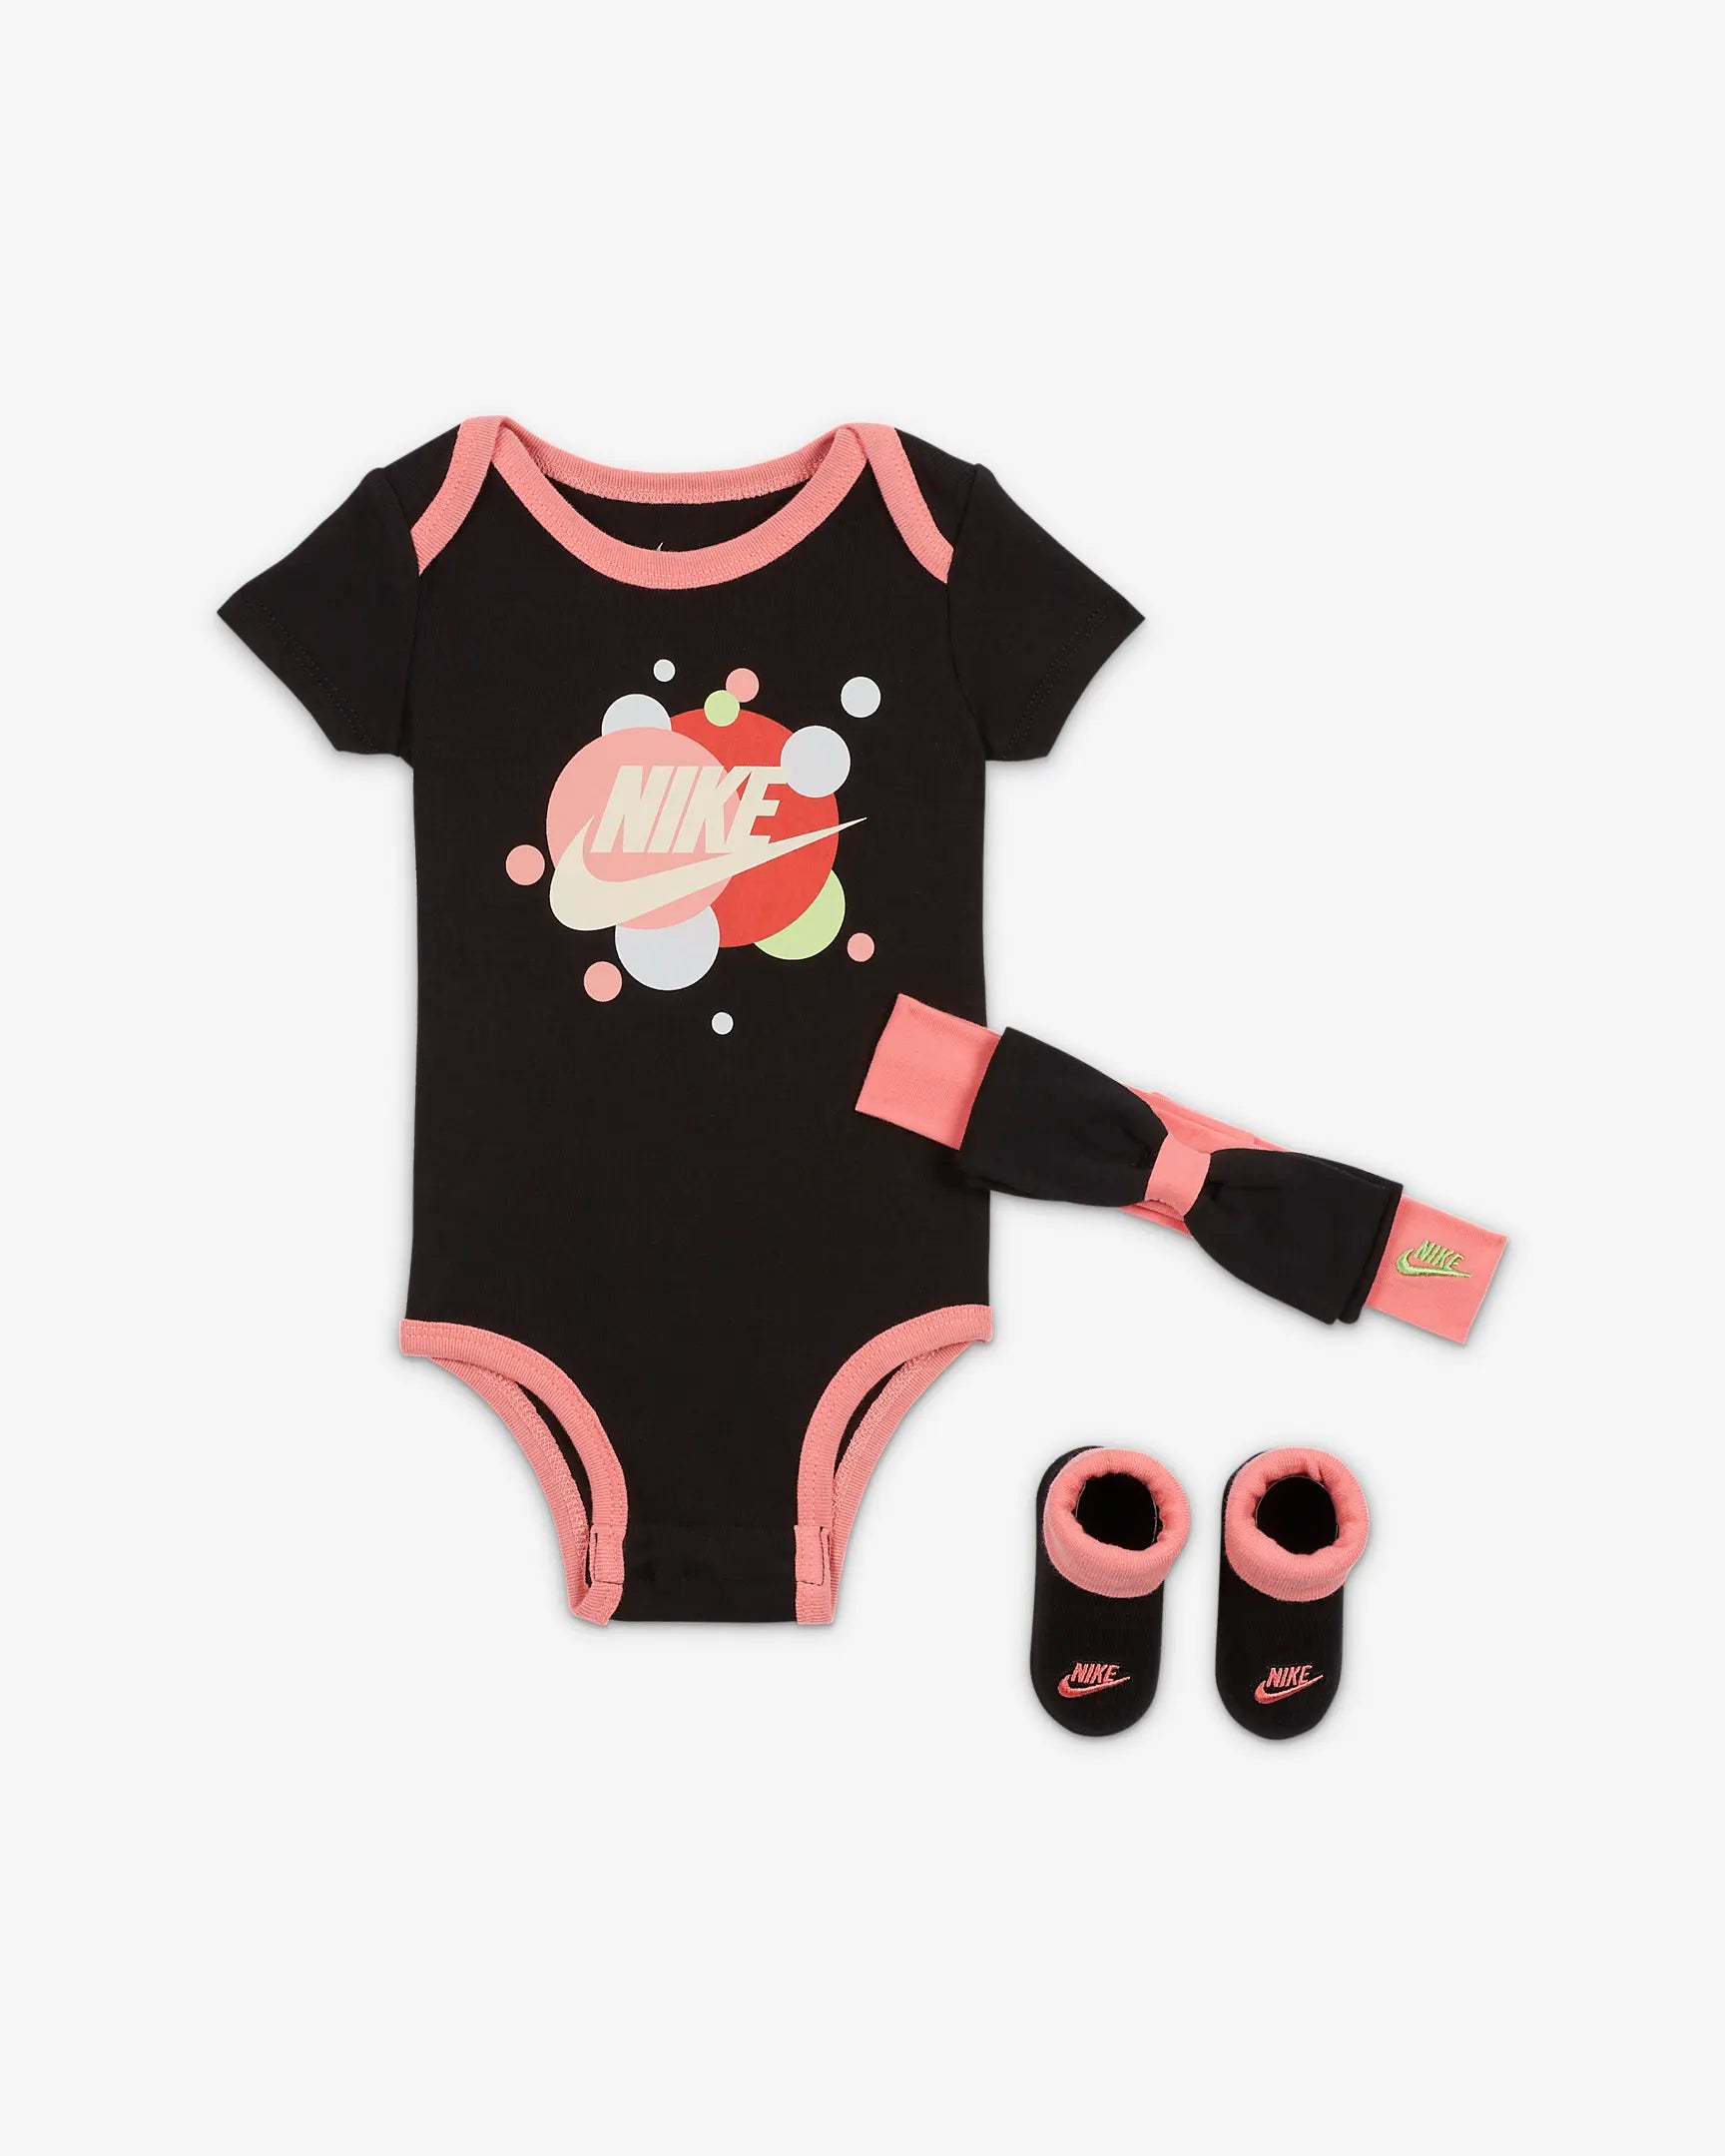 Nike Baby Set - Black/Pink